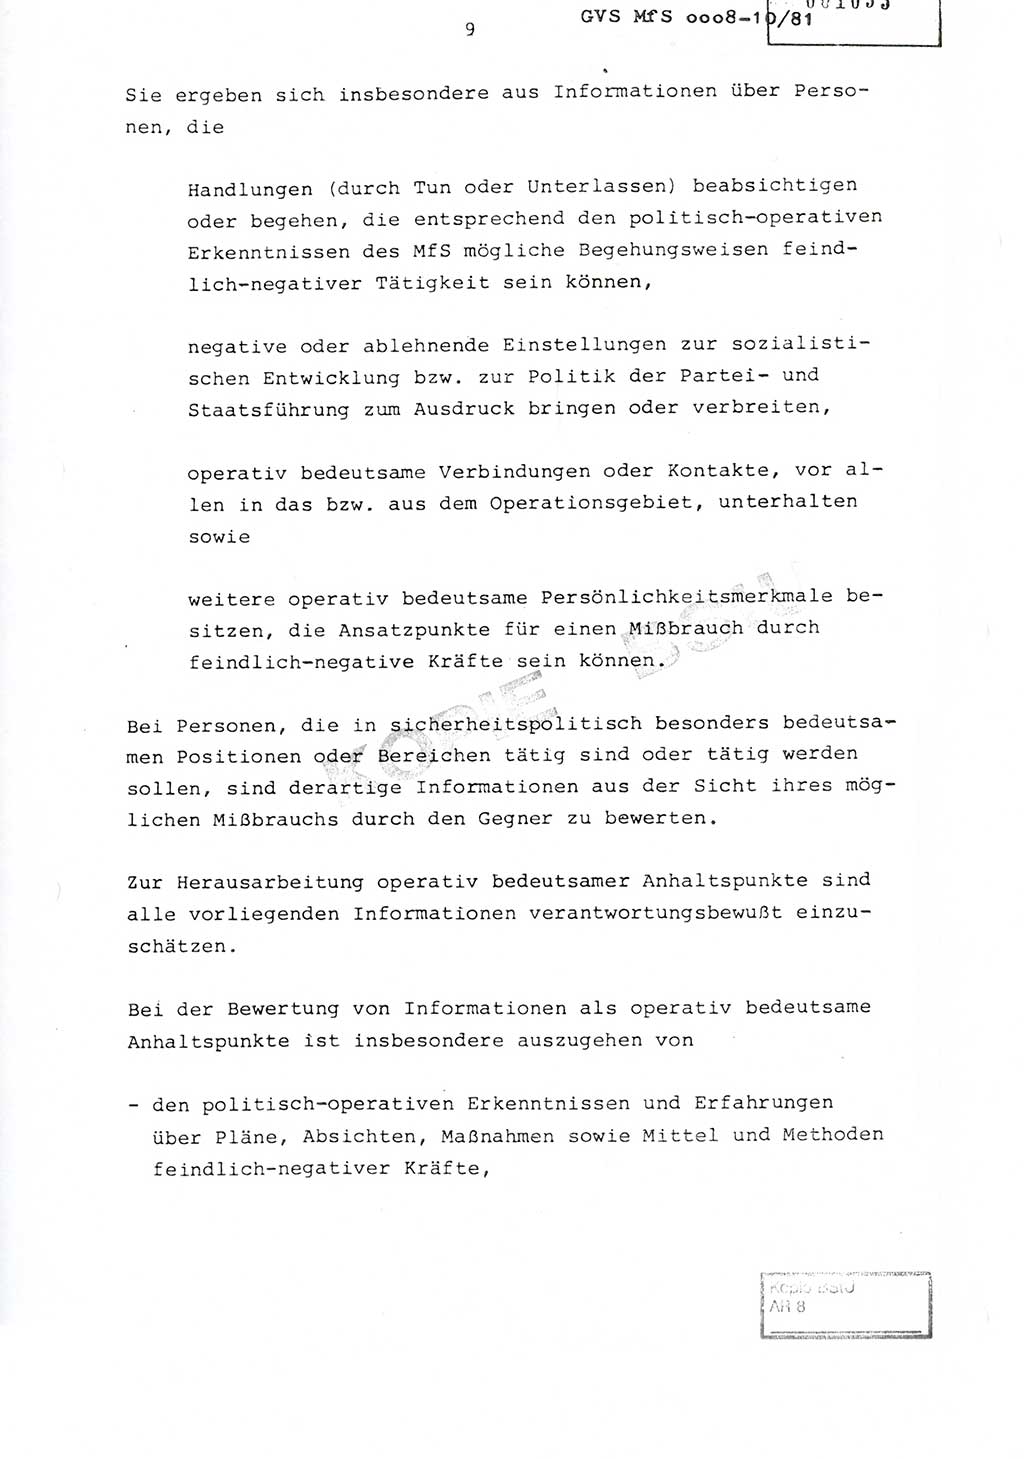 Richtlinie Nr. 1/81 über die operative Personenkontrolle (OPK), Ministerium für Staatssicherheit (MfS) [Deutsche Demokratische Republik (DDR)], Der Minister, Geheime Verschlußsache (GVS) ooo8-10/81, Berlin 1981, Blatt 9 (RL 1/81 OPK DDR MfS Min. GVS ooo8-10/81 1981, Bl. 9)